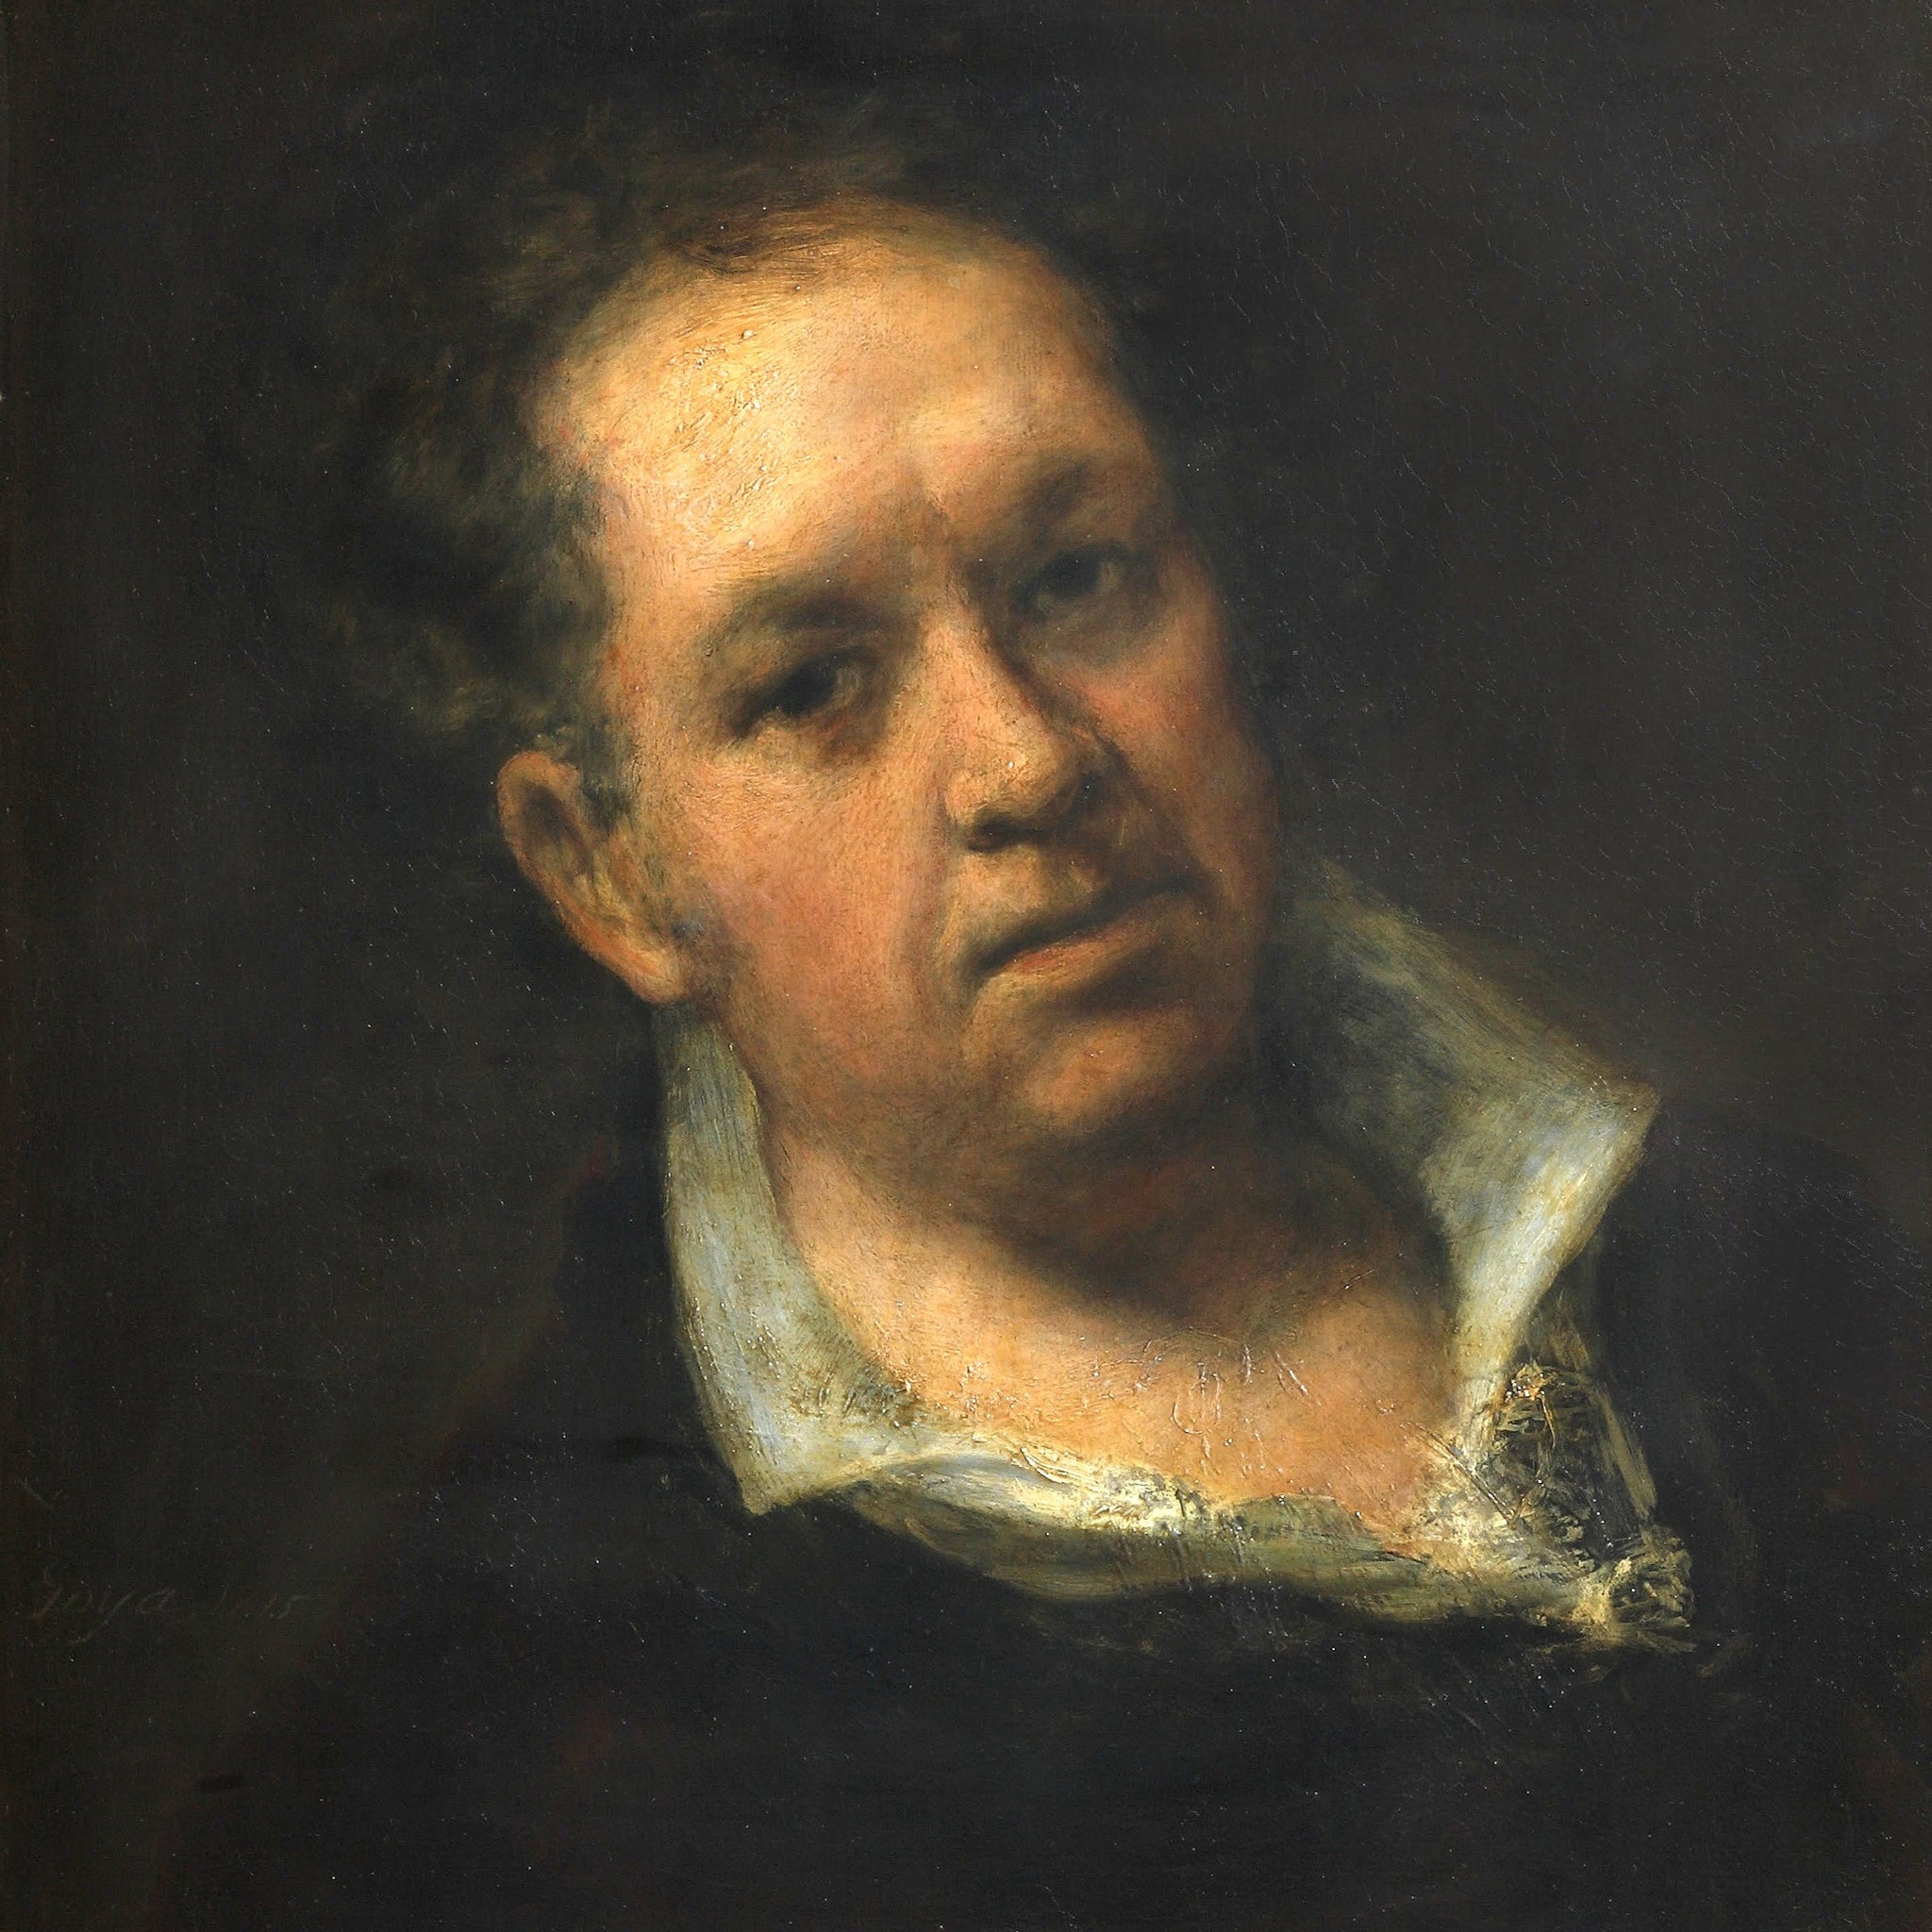 Autoportrait (1815) - Francisco de Goya